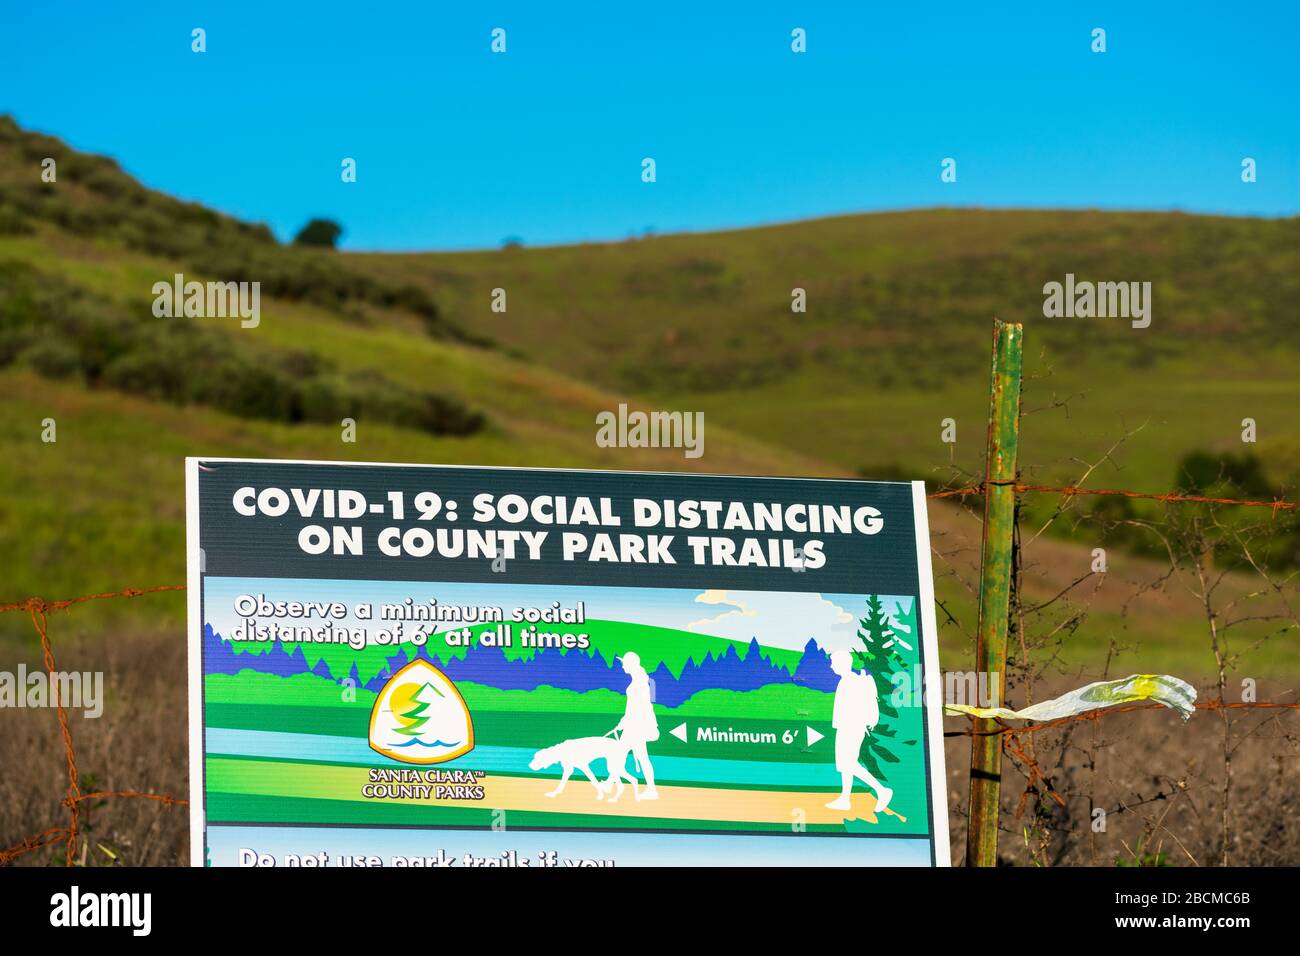 Segnale di distanza sociale sul sentiero escursionistico che richiede ai visitatori del parco della contea di praticare una distanza di sicurezza di almeno 6 piedi per prevenire la diffusione COVID-19 - Foto Stock